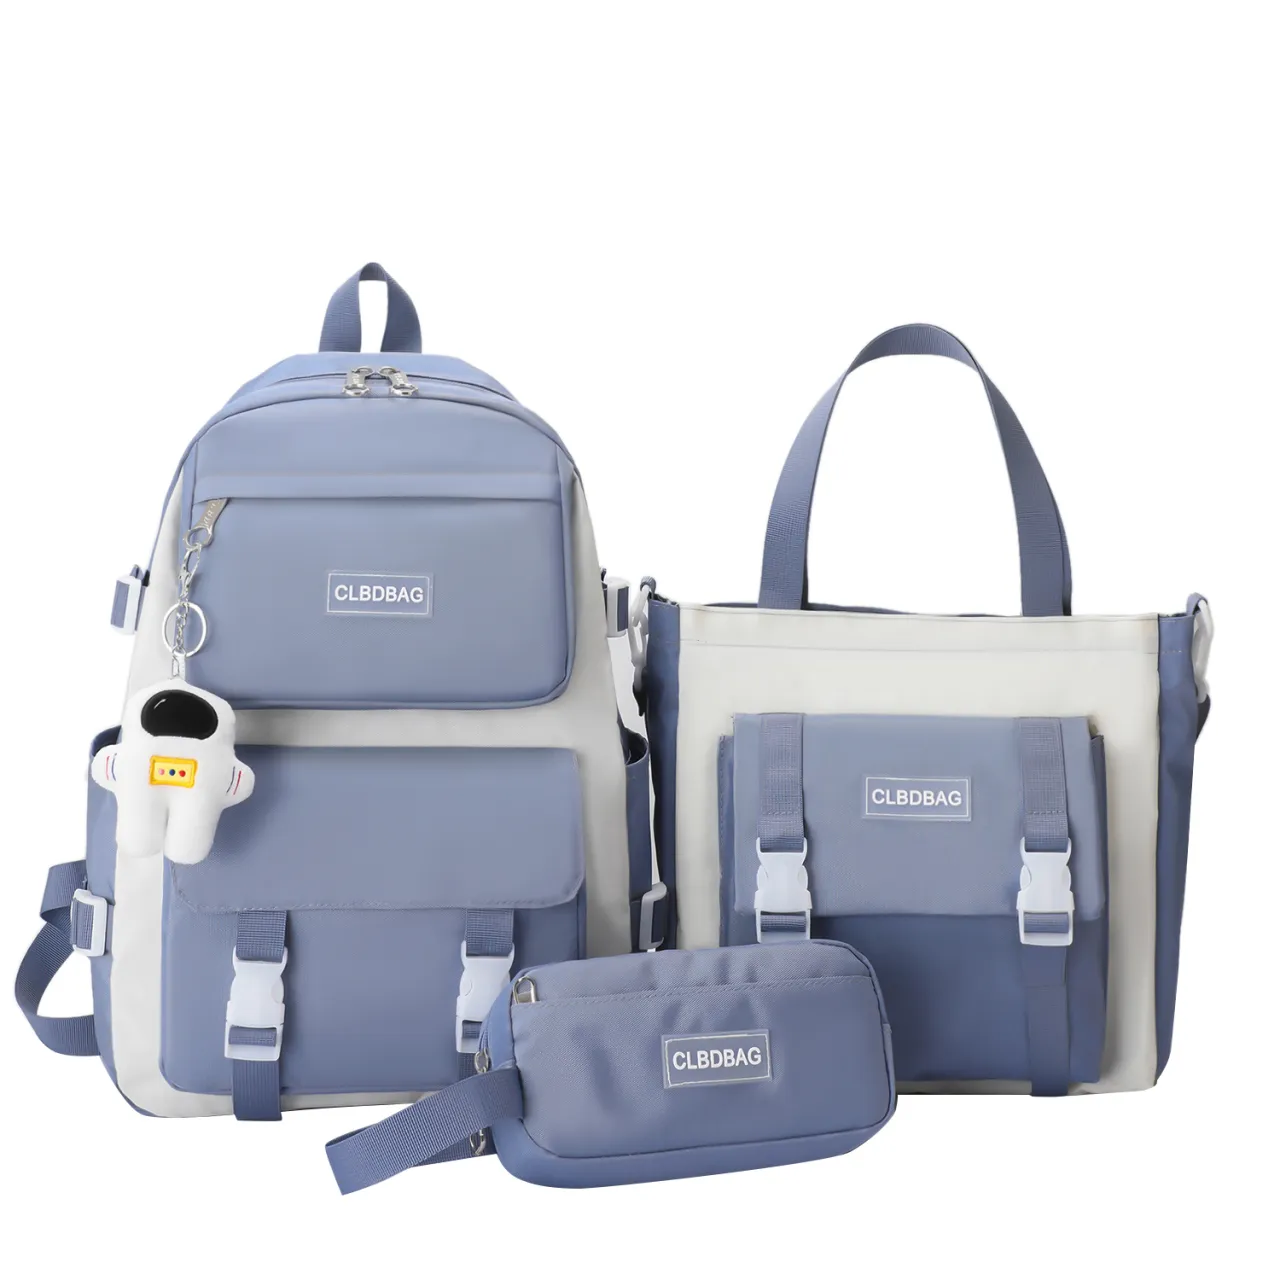 School Bag 4-in-1 Student Schoolbag Set Backpack / Tote / Sling / Pencil Case Waterproof Girls College Student Bags